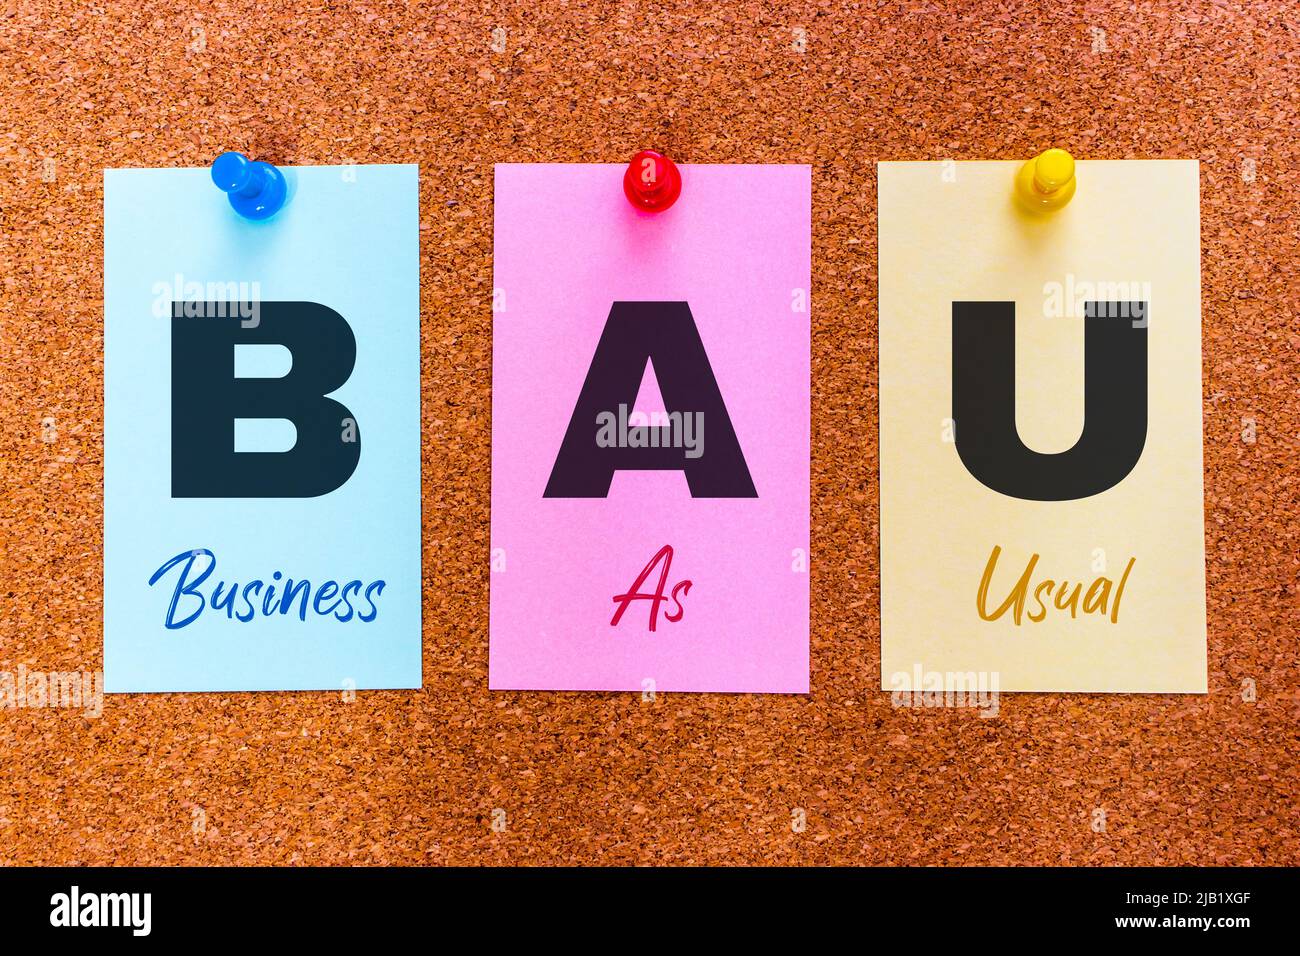 Conceptual 3 letra abreviatura BAU (Business as usual) en pegatinas multicolores adheridas a un tablero de corcho. Foto de stock